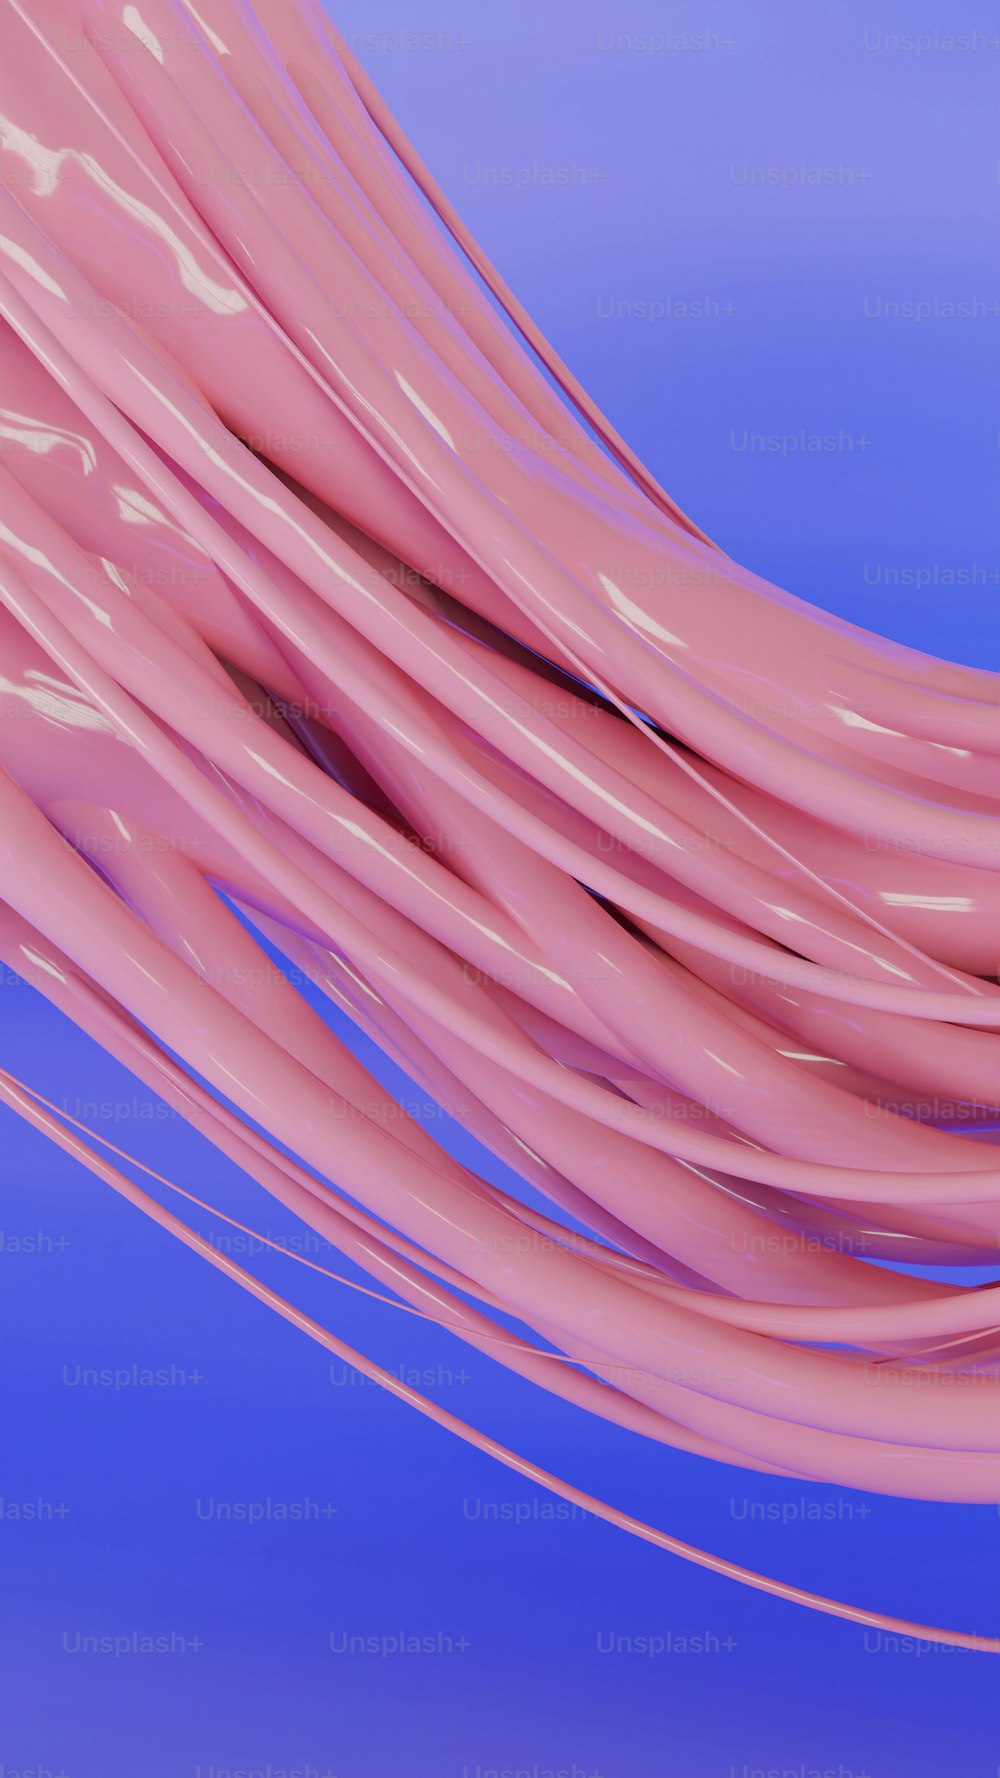 um close up de um objeto rosa em um fundo azul